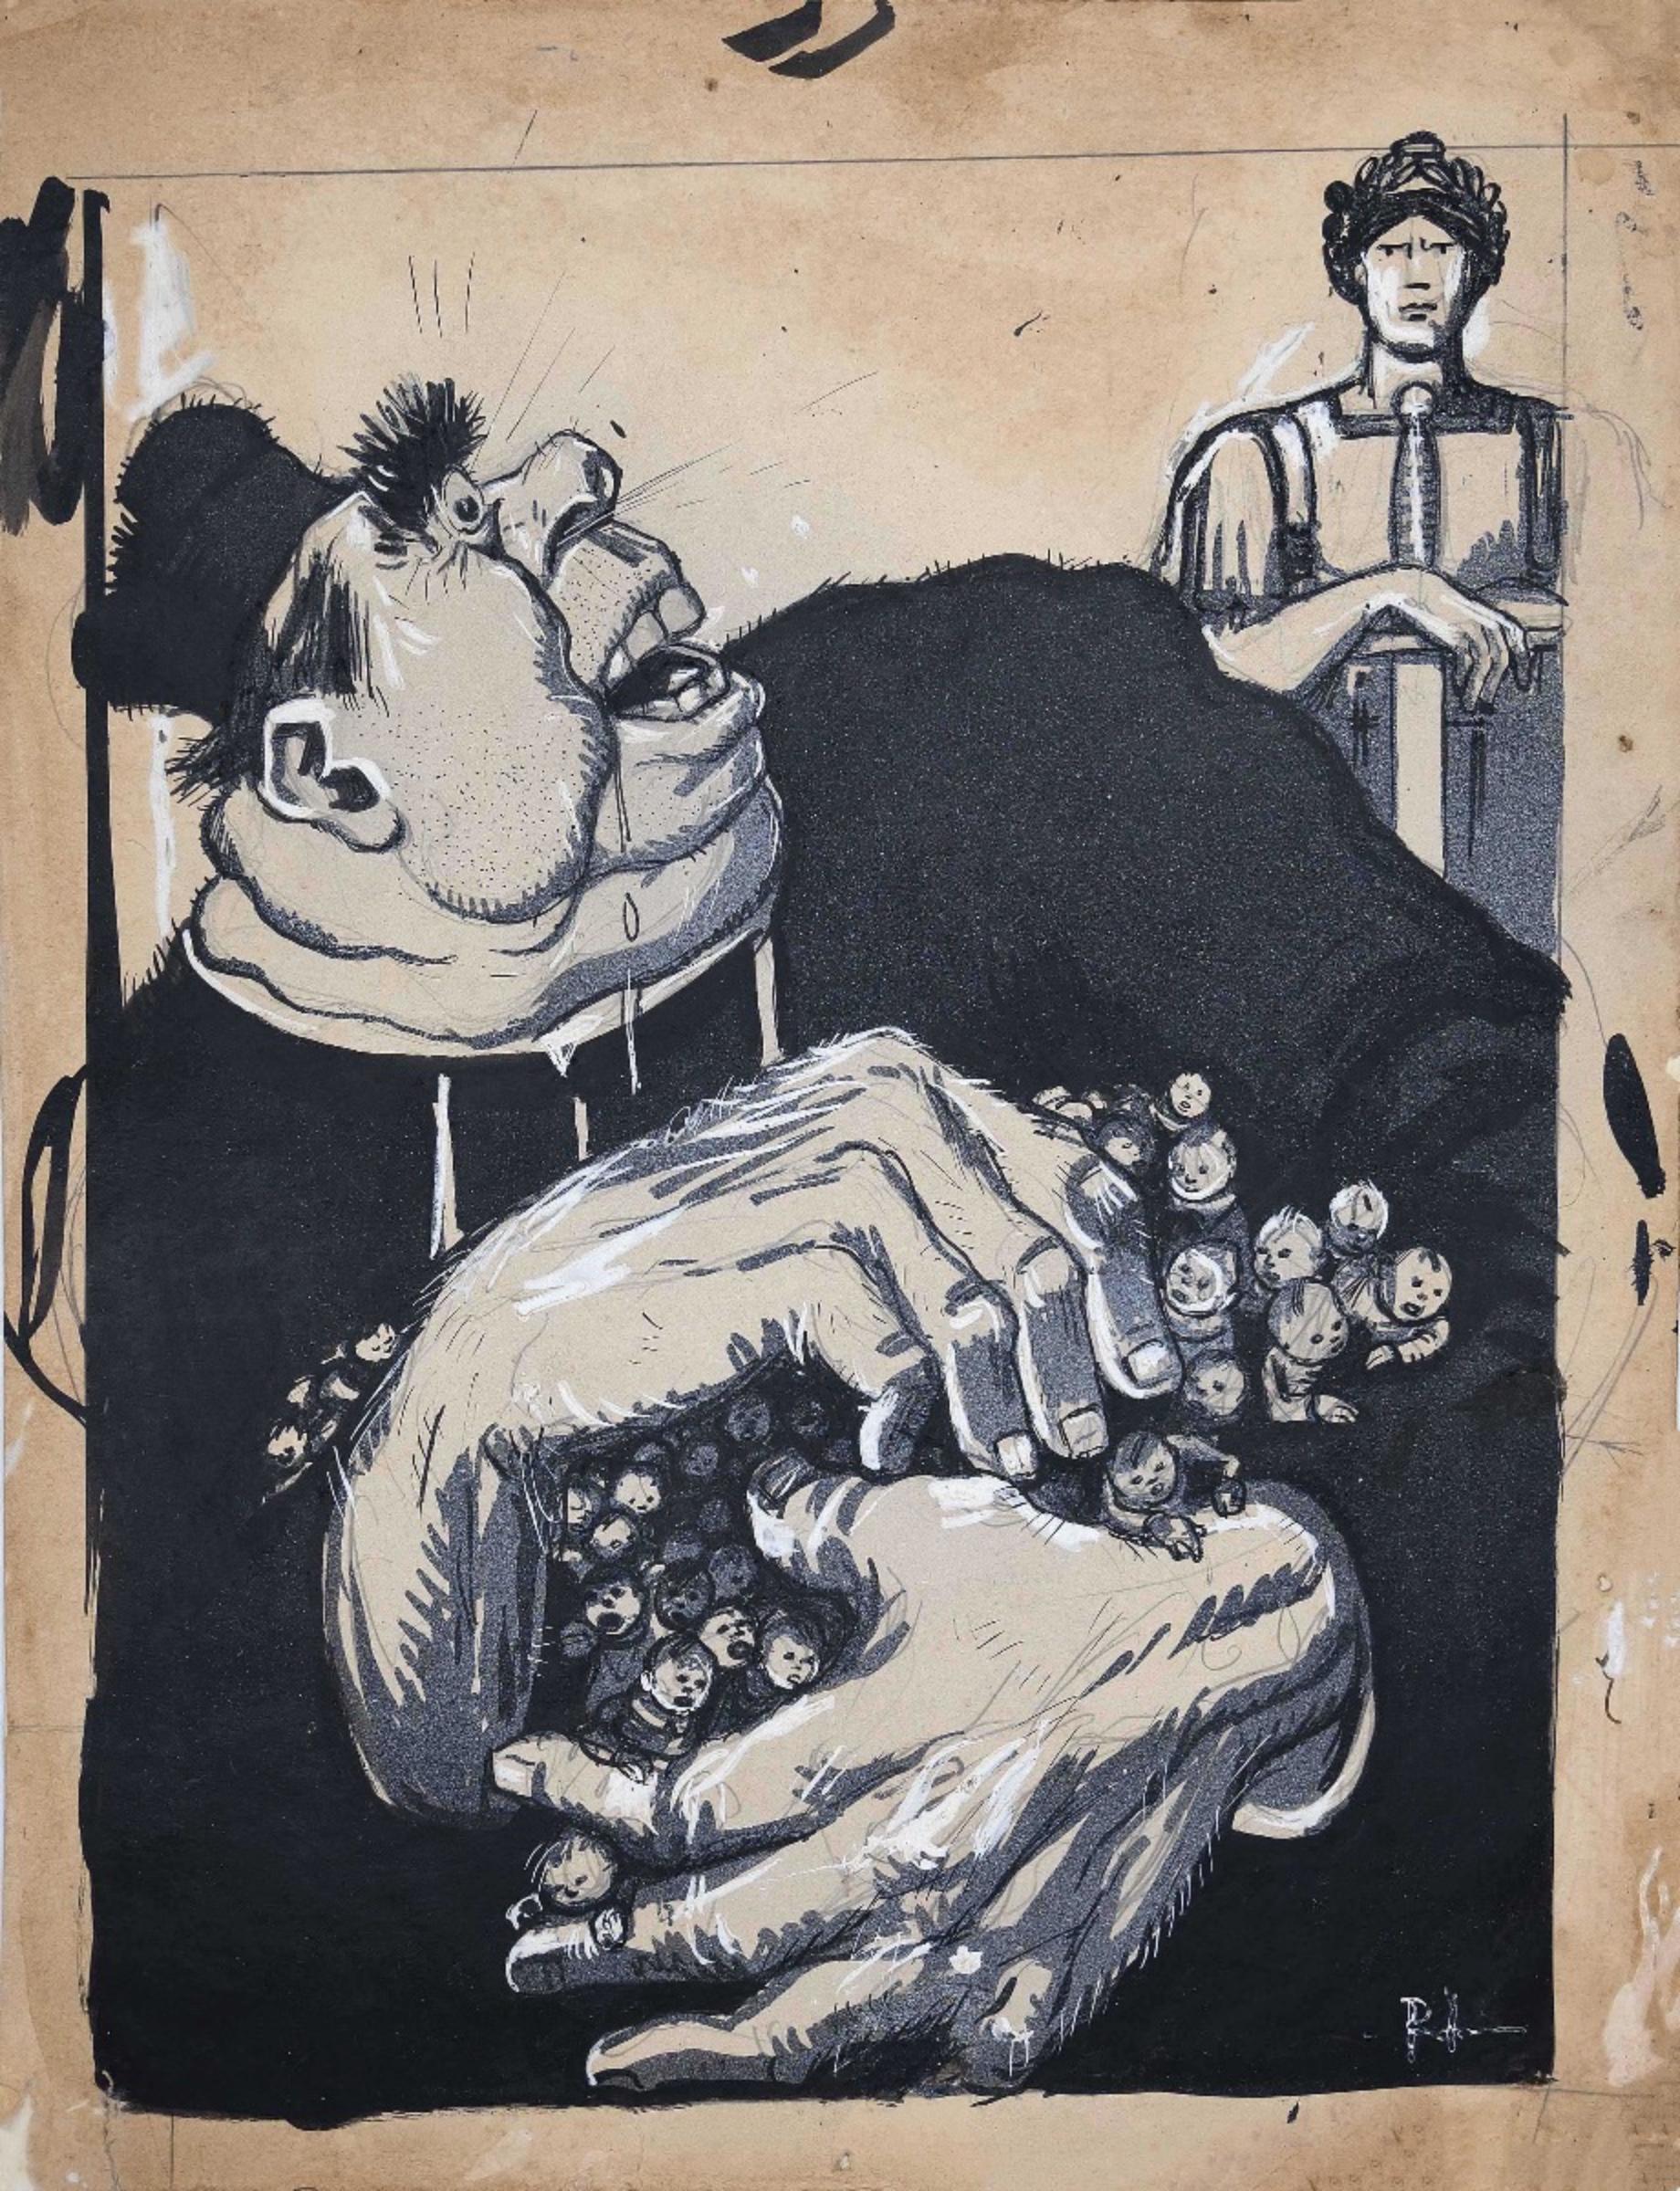 Skizze für L'Asino ist eine Originalzeichnung in Tusche, Blei und Aquarell von Gabriele Galantara vom 06.02.1910

Der Erhaltungszustand des Kunstwerks ist auf gealtertem Papier gut.

Gabriele Galantara (1867-1937), Journalist und einer der